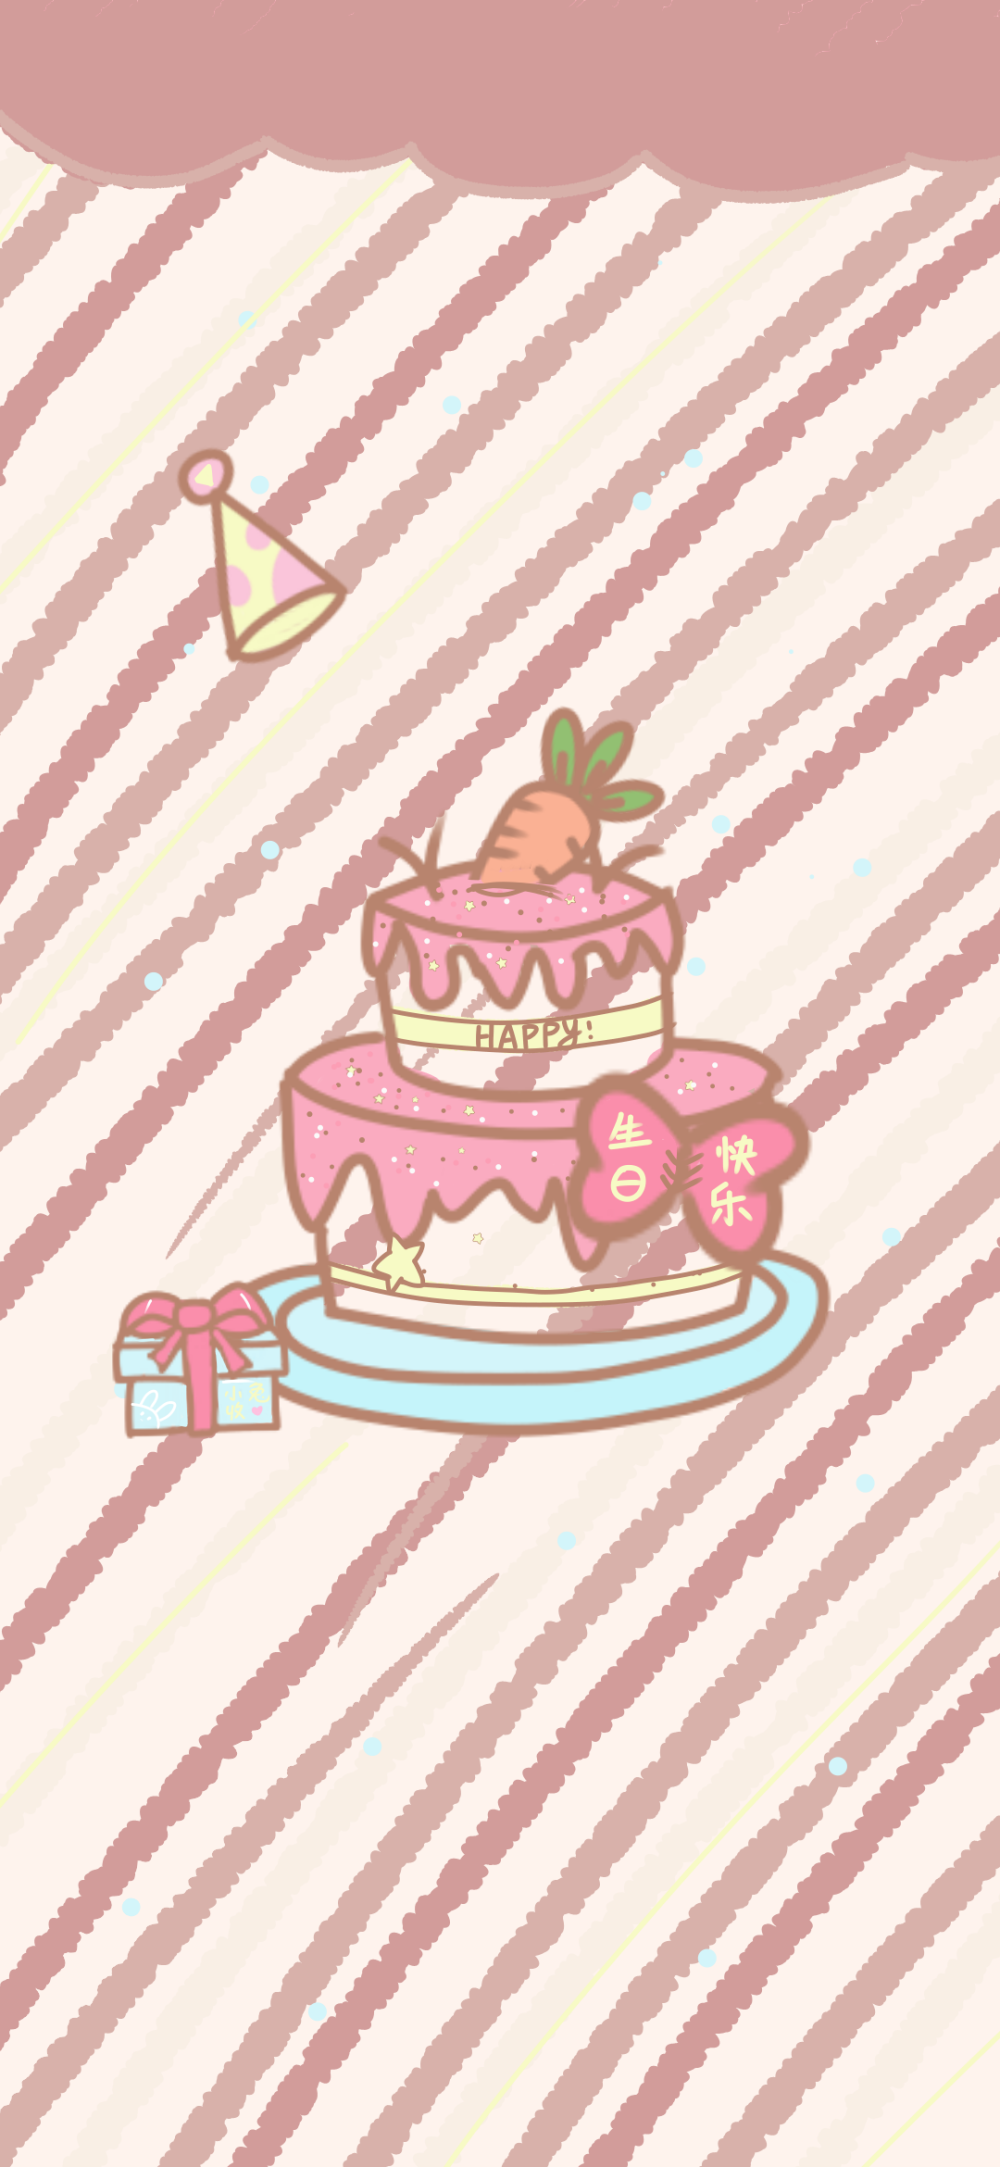 可爱壁纸生日快乐可可爱爱蛋糕了